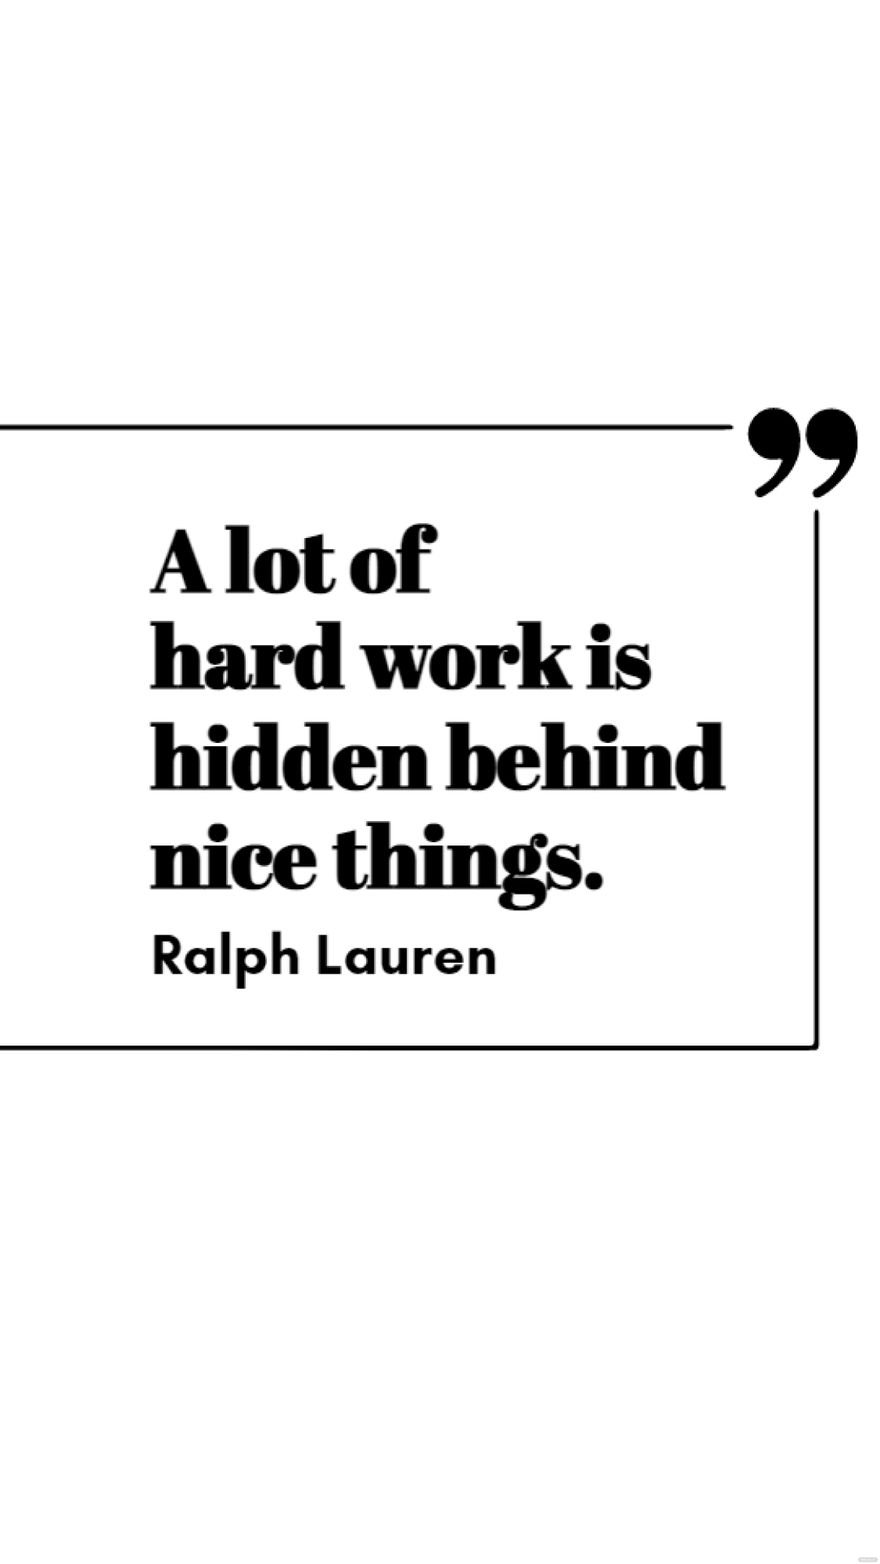 Free Ralph Lauren - A lot of hard work is hidden behind nice things. in JPG